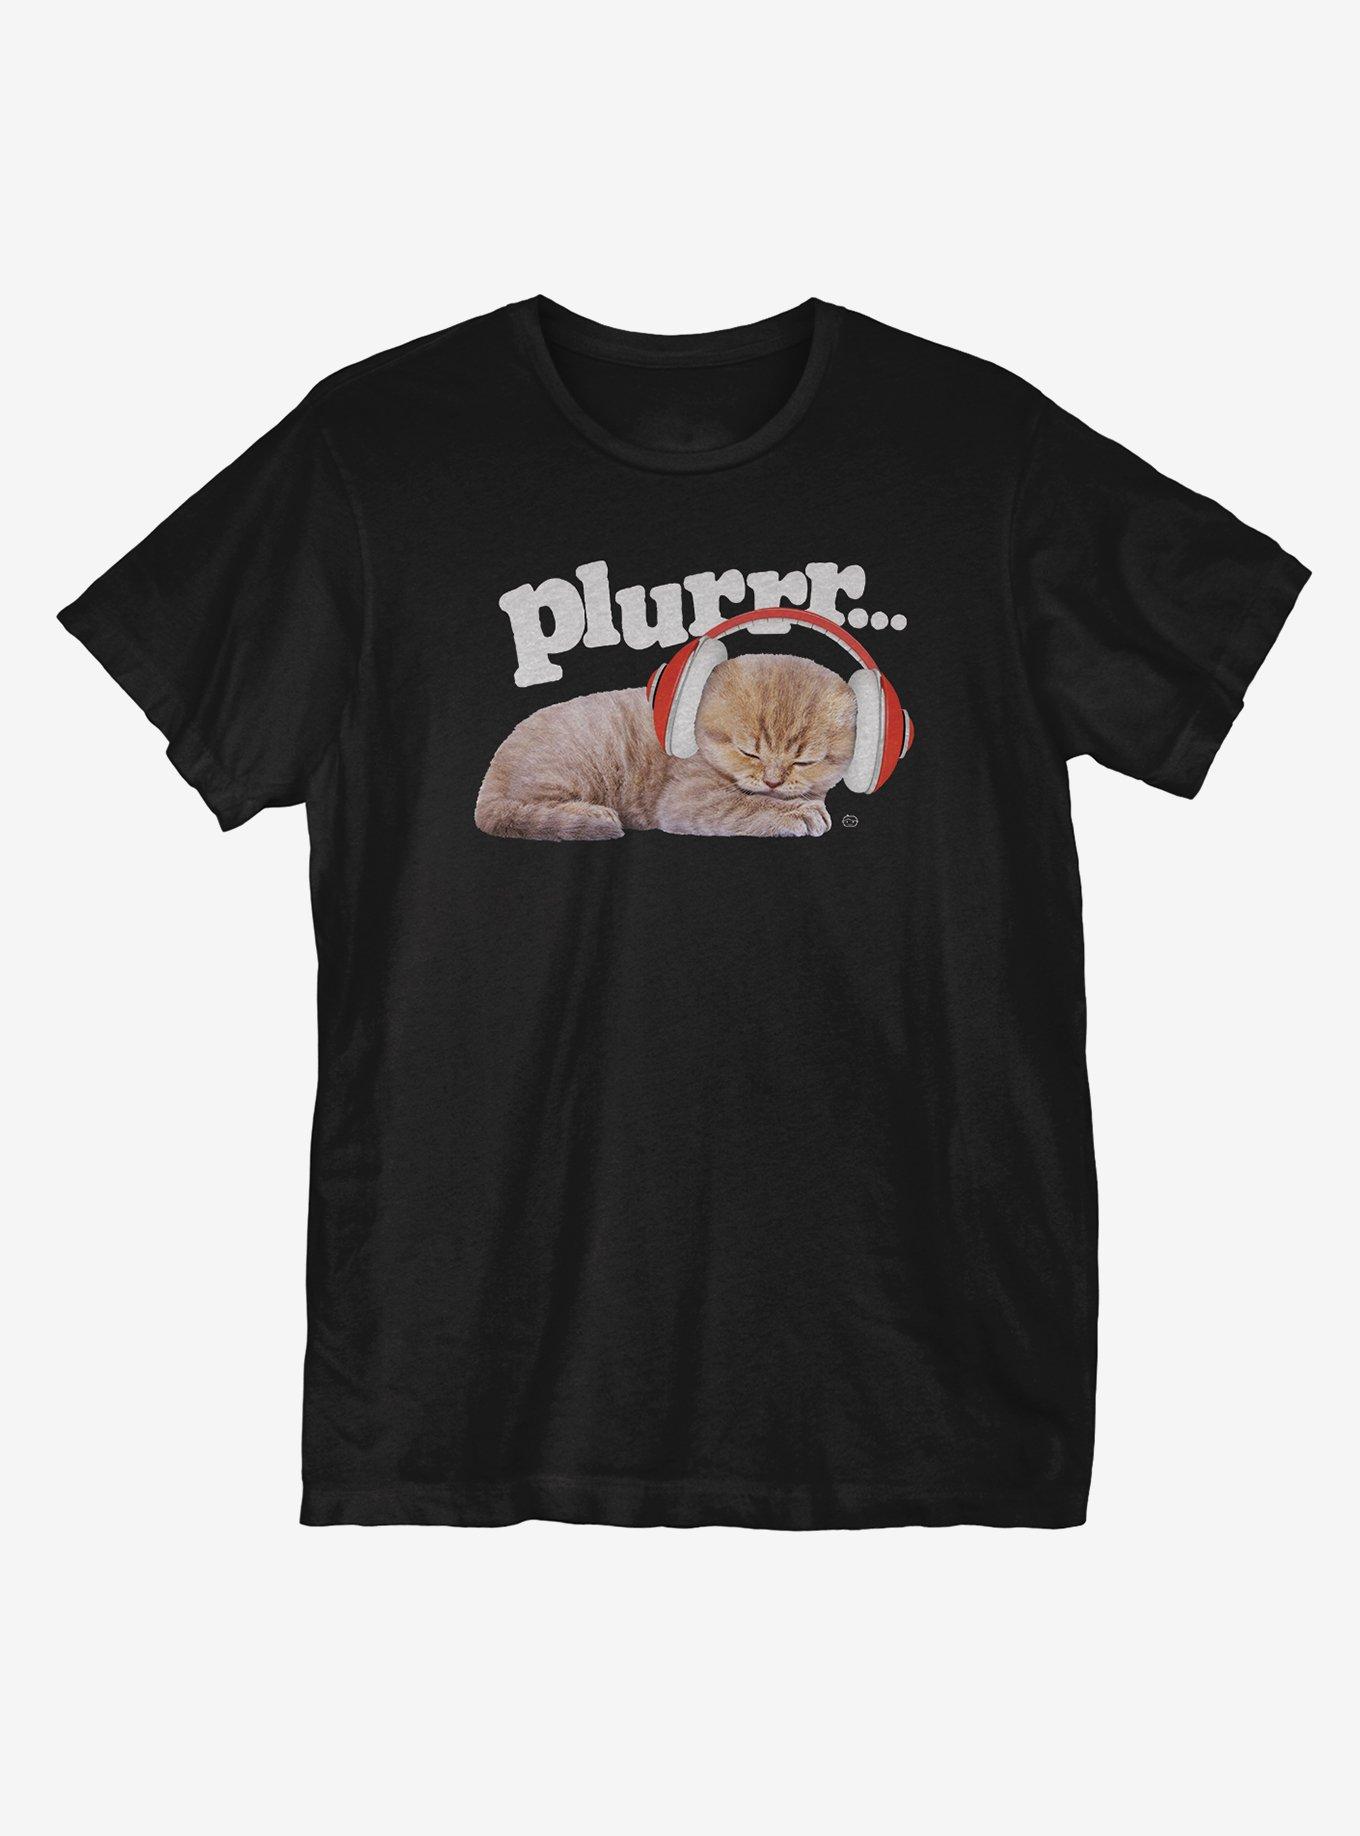 Plurr Kittem T-Shirt, BLACK, hi-res